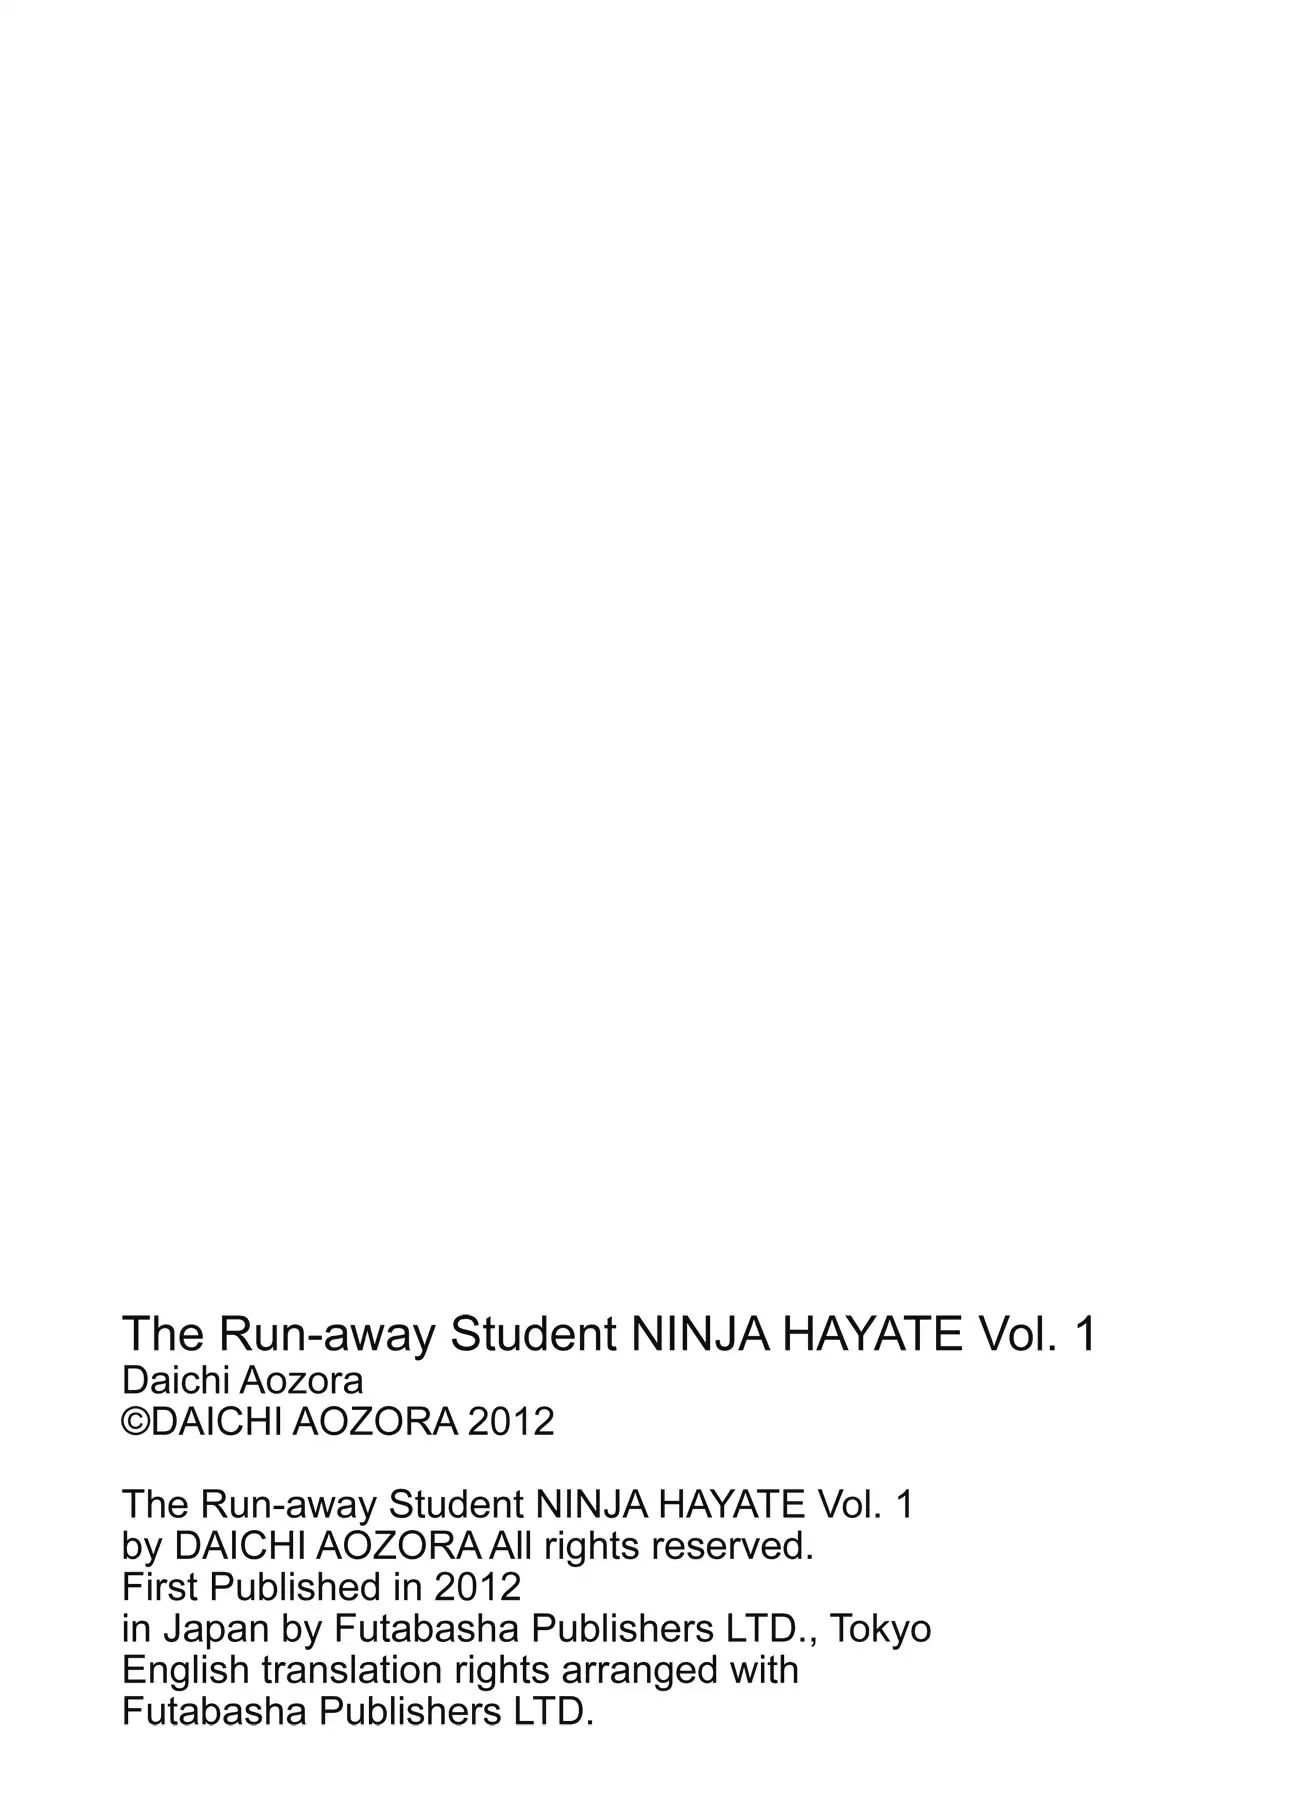 The Run-Away Student Ninja Hayate Chapter 1 #140